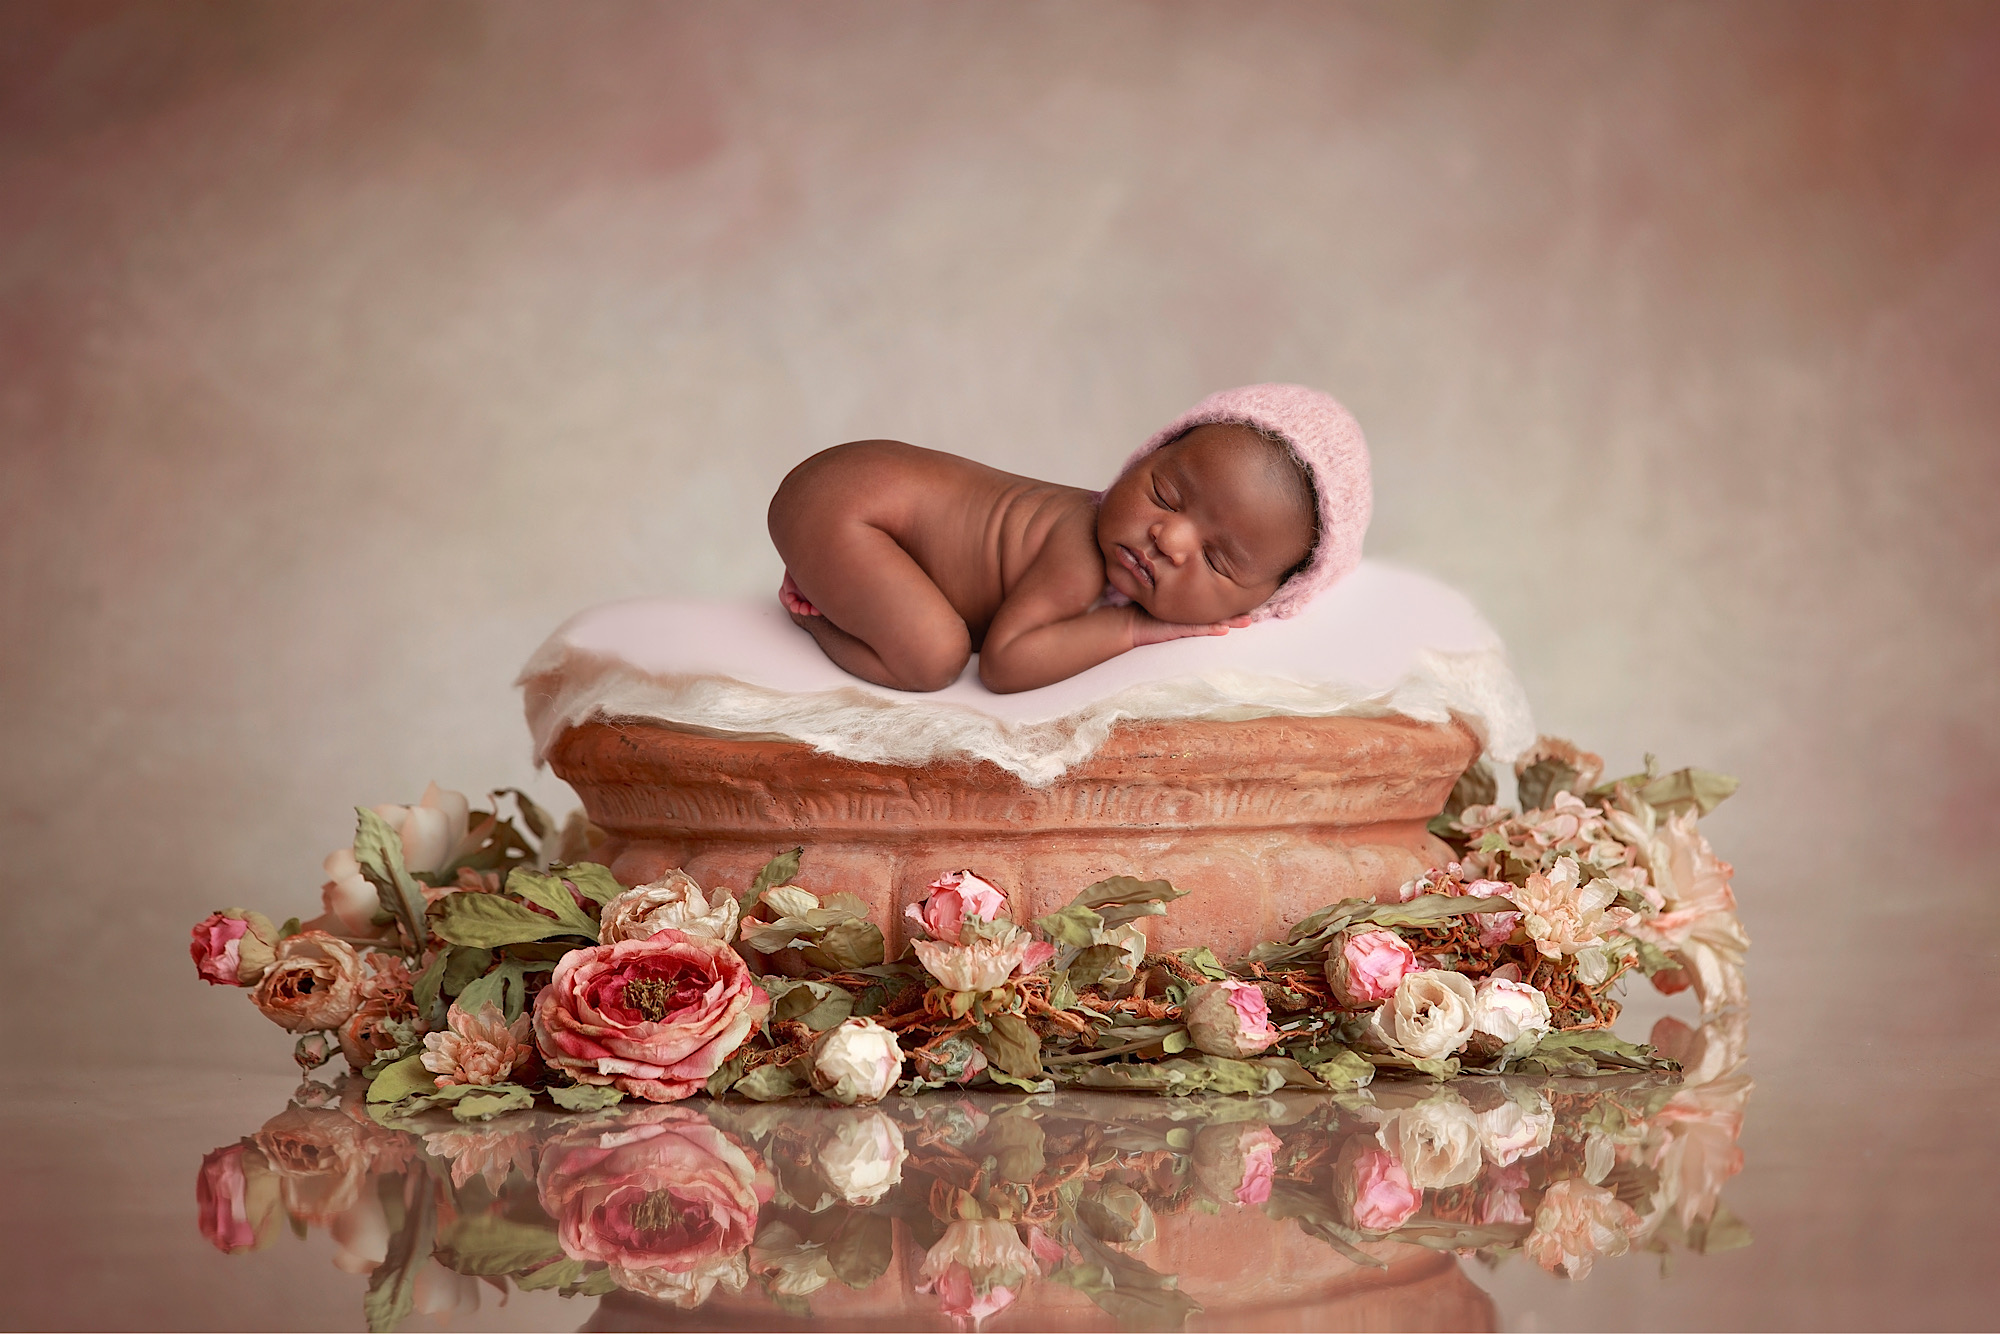 Newborn baby and flowers